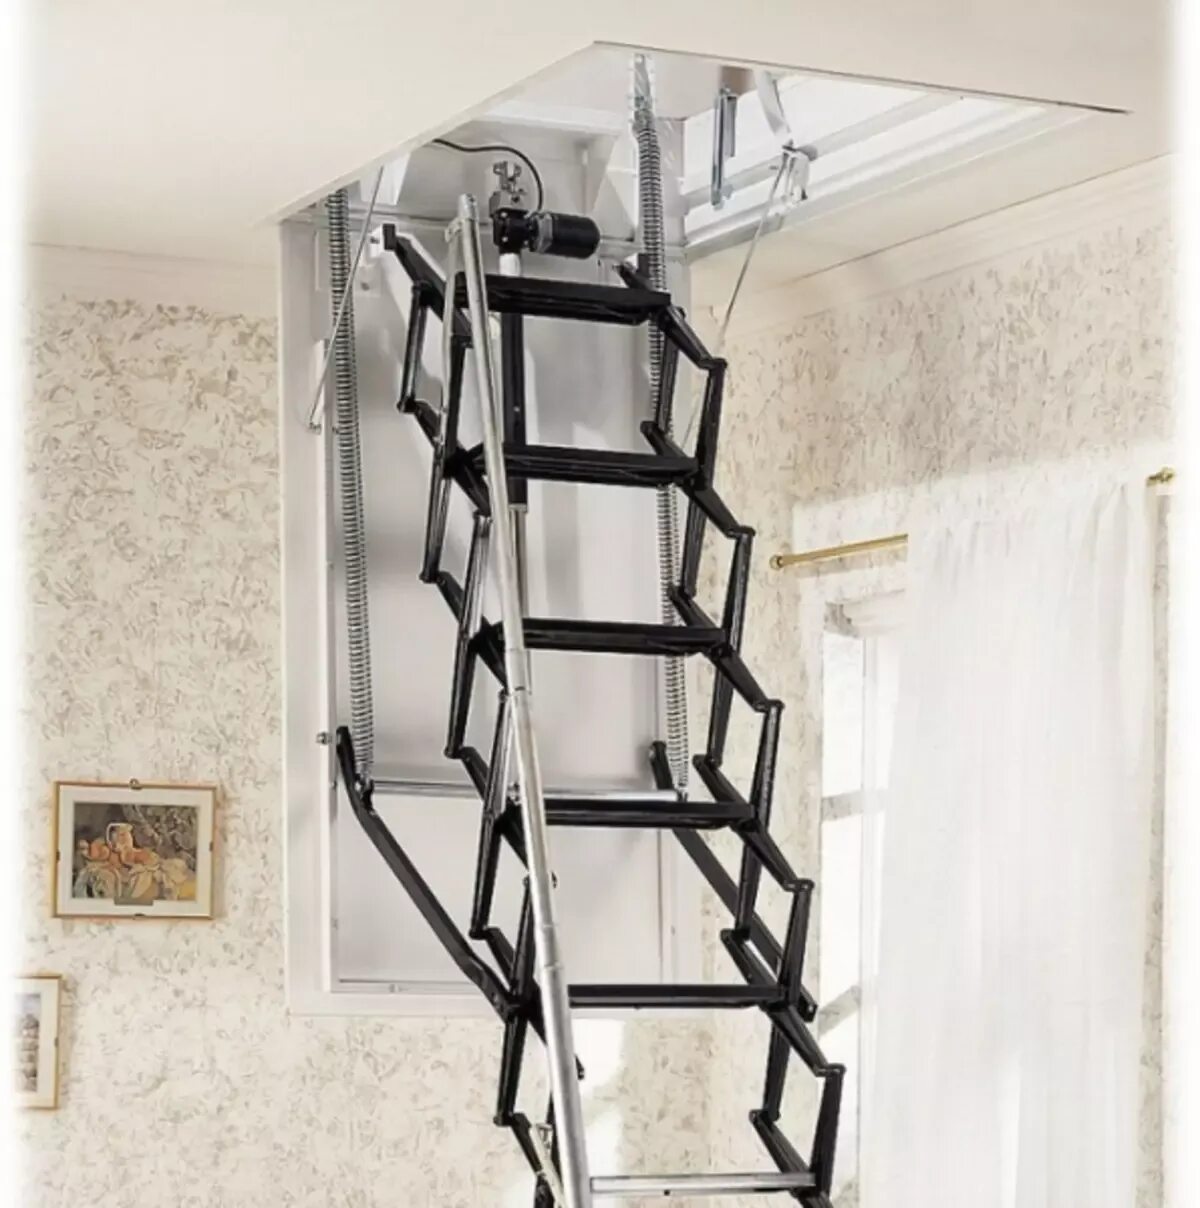 Поднимающаяся лестница на чердак. Стационарная чердачная лестница OMP. Чердачные люки с выдвижной лестницей. Телескопическая лестница на чердак с люком. Лестница чердачная ножничная.